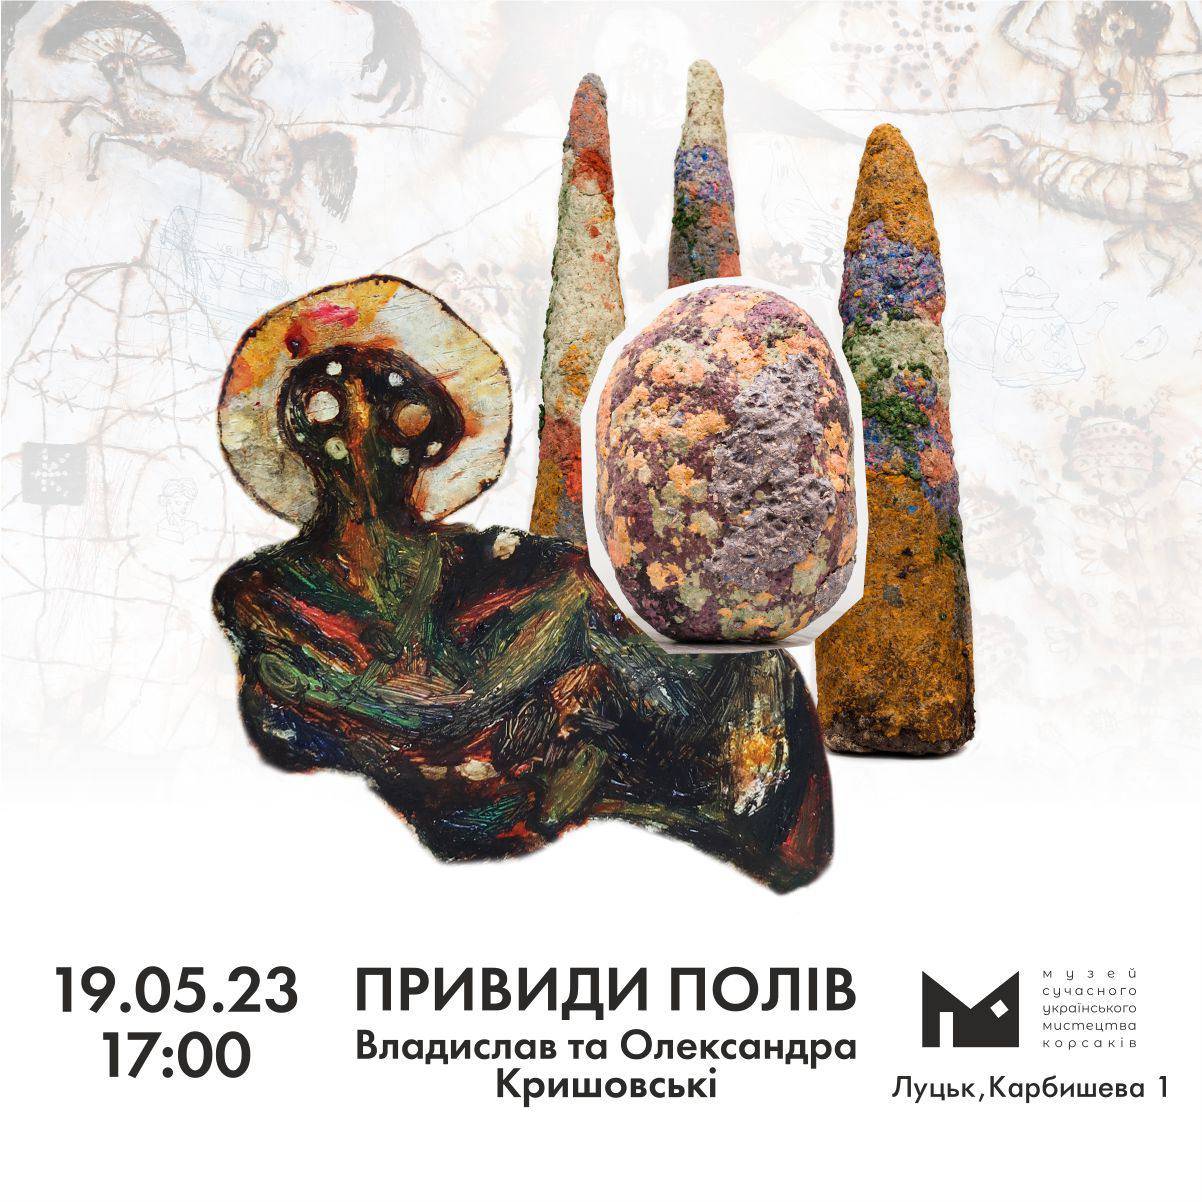 19.05. о 17:00 в Музеї Корсаків відбудеться відкриття проєкту Владислава та Олександри Кришовських «Привиди полів»!